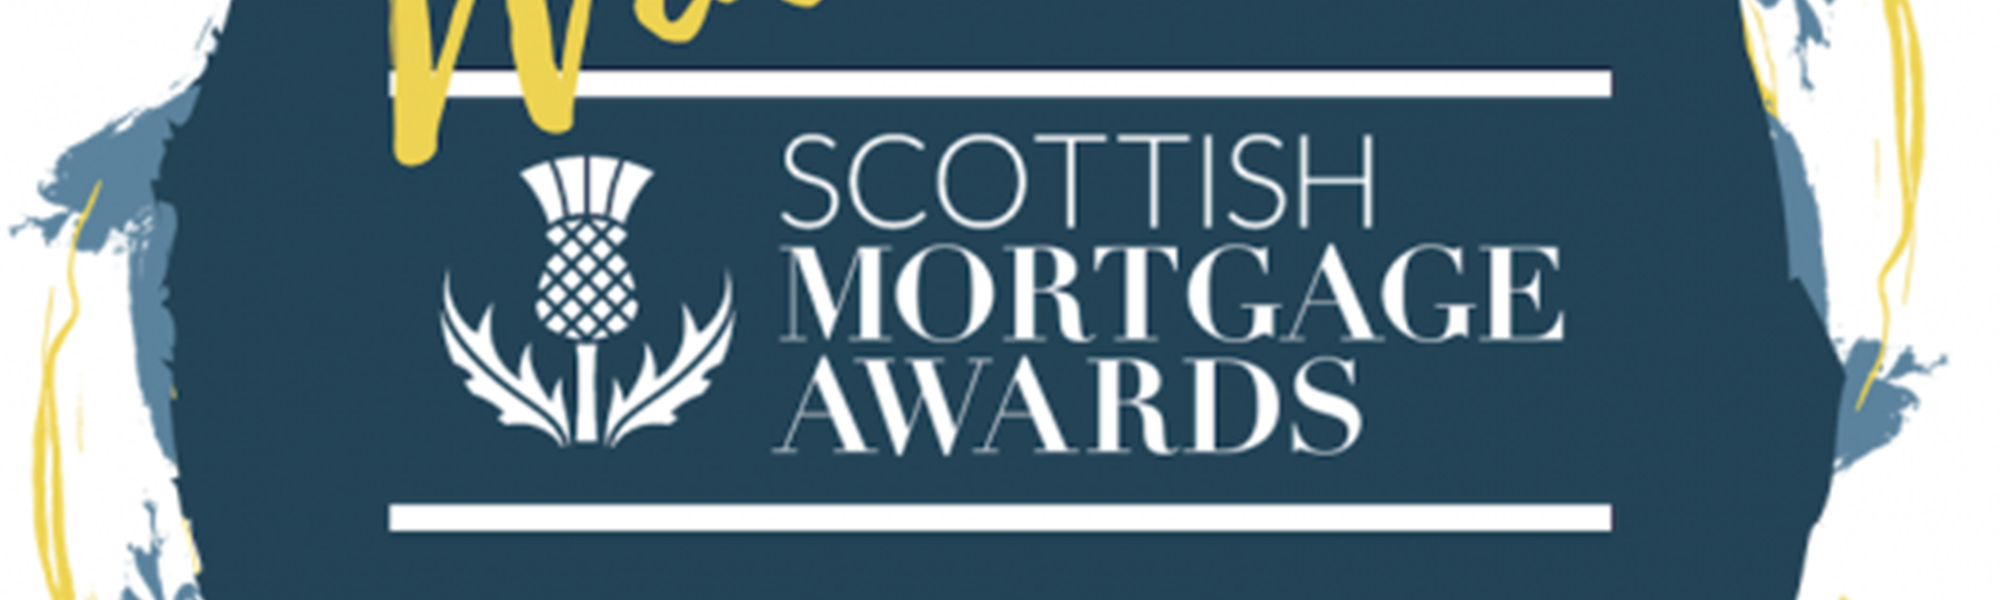 Background image: Scottish Mortgage Awards